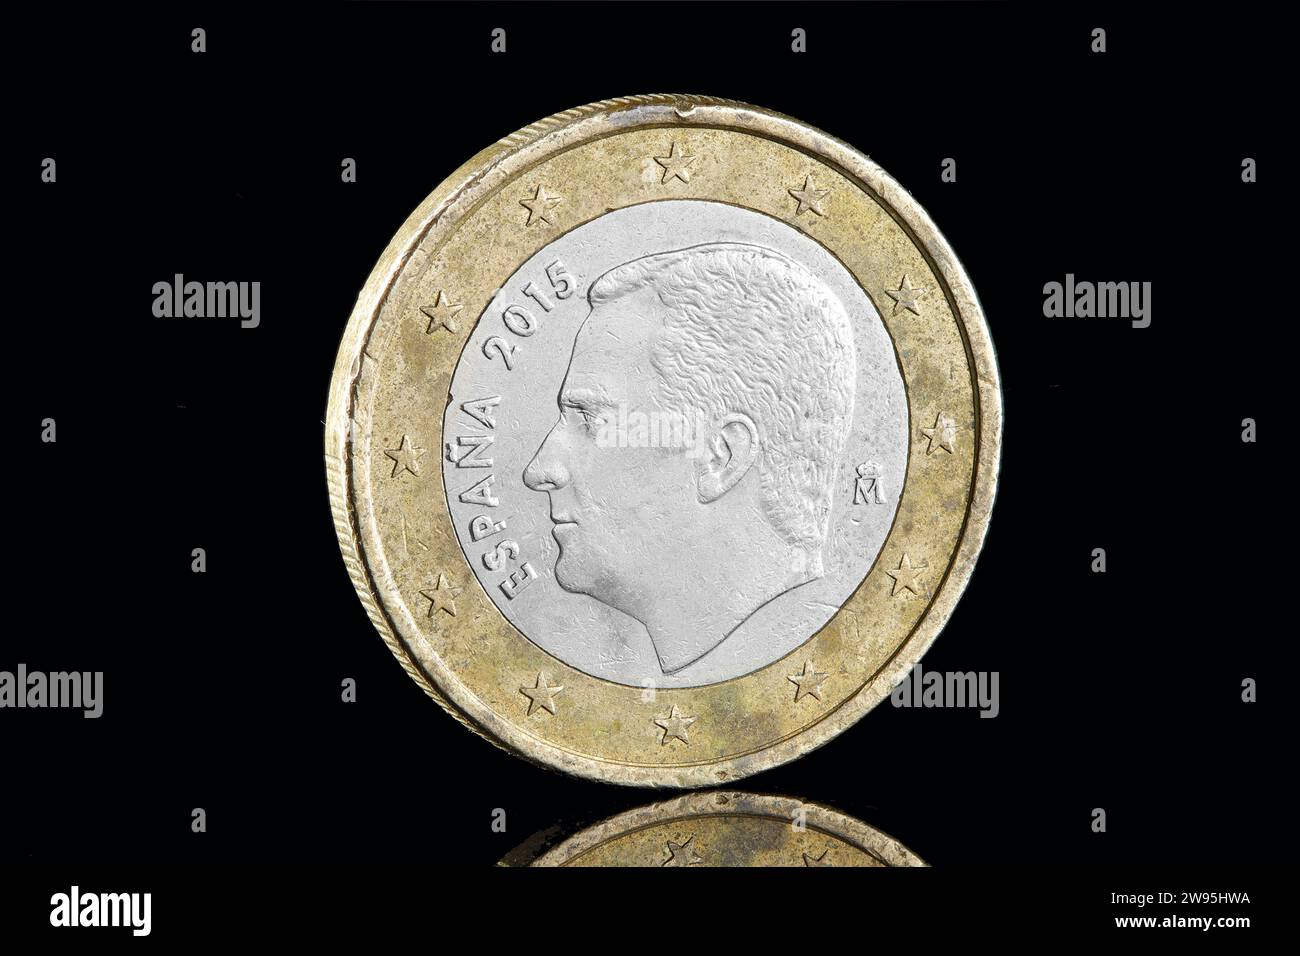 Coin 1 Euro Malta Republic 2019 'F' Rare 